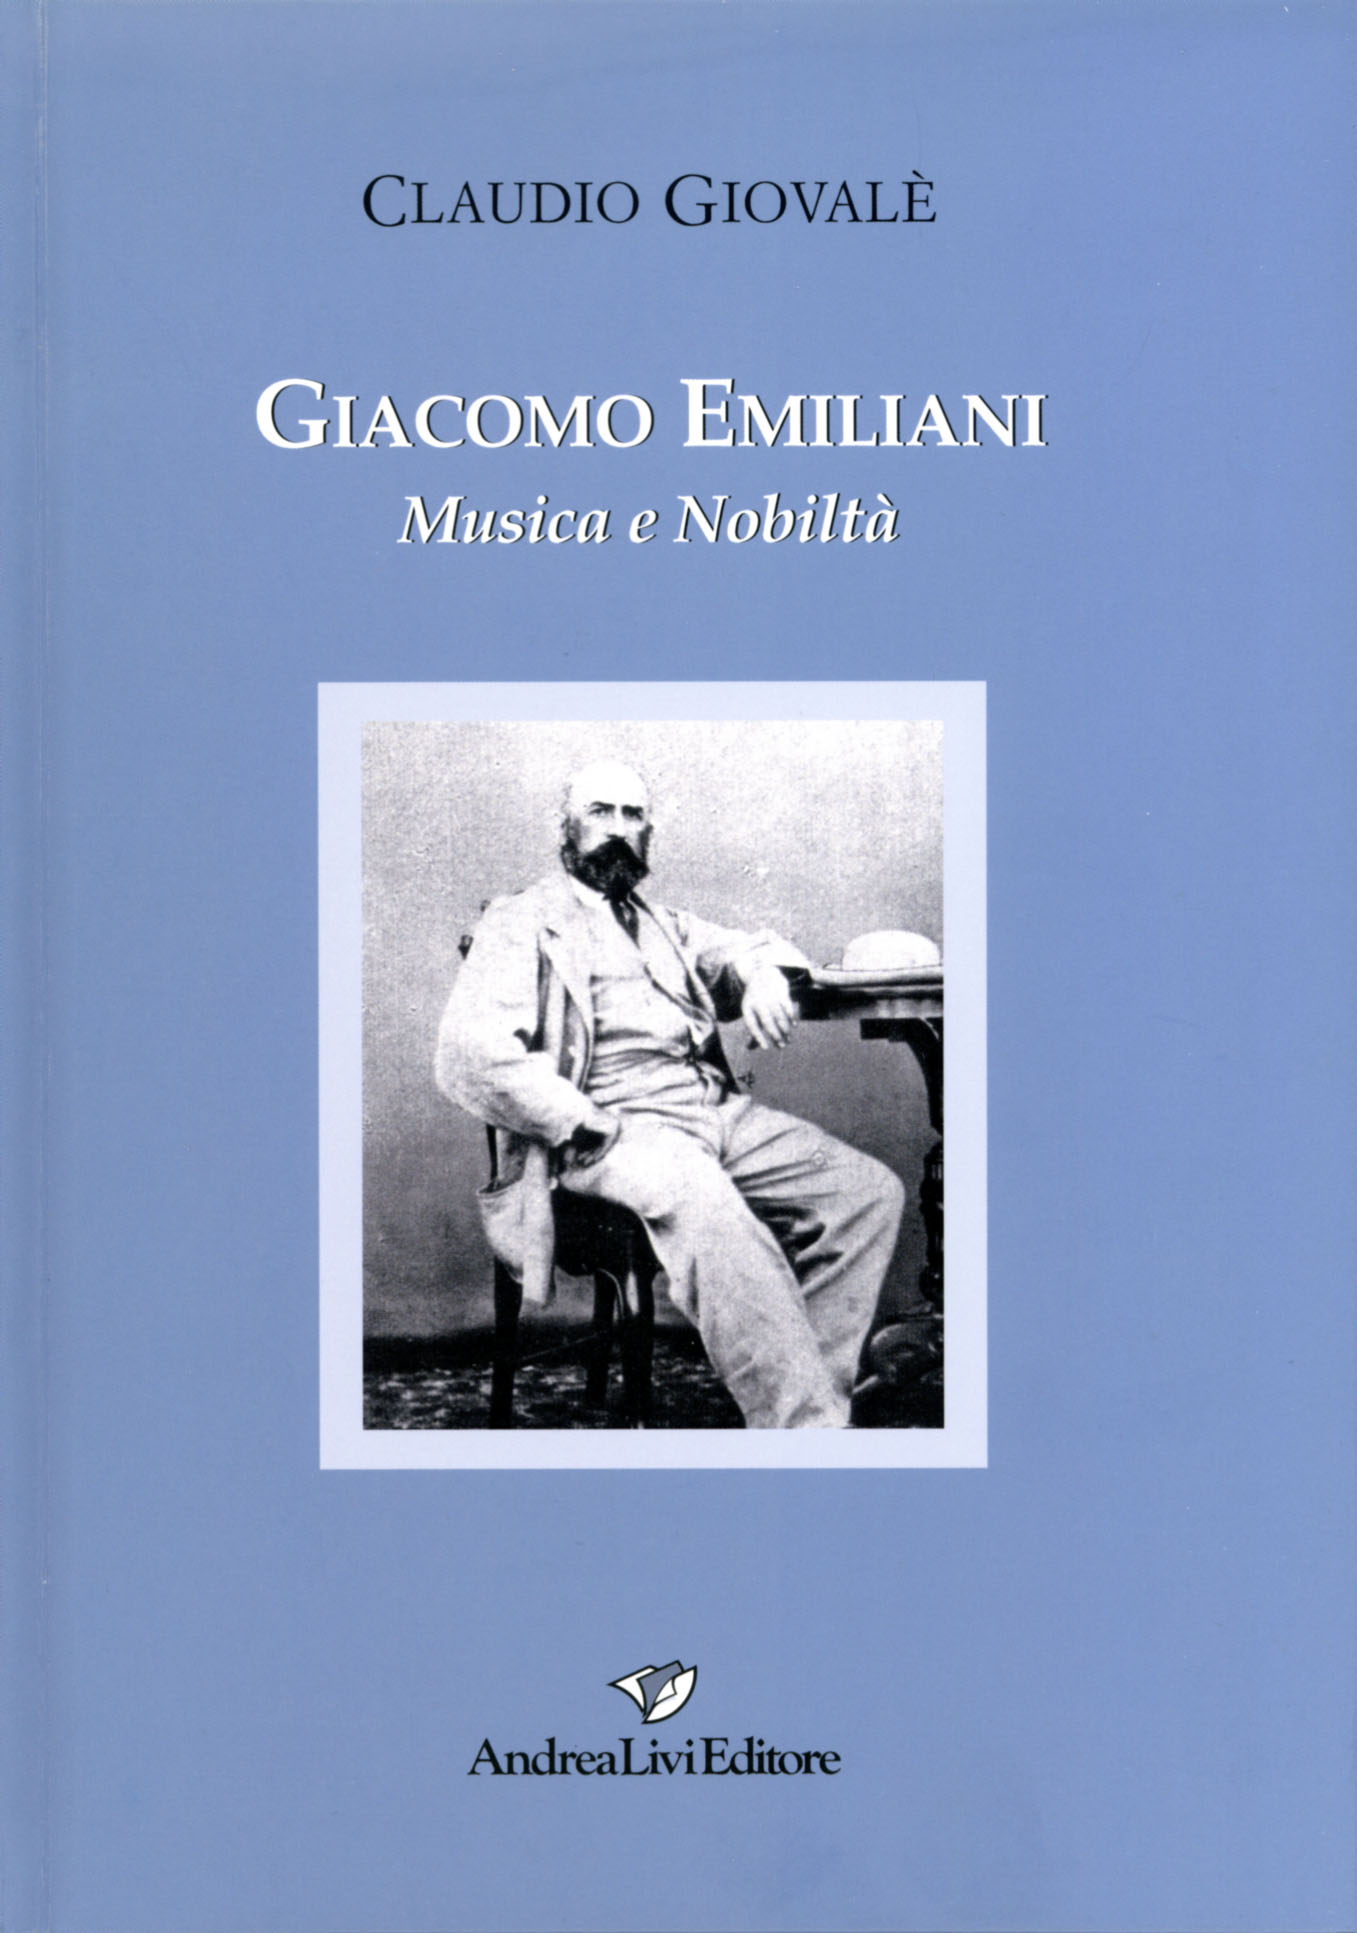 Claudio Giovalè, Giacomo Emiliani Musica e Nobiltà